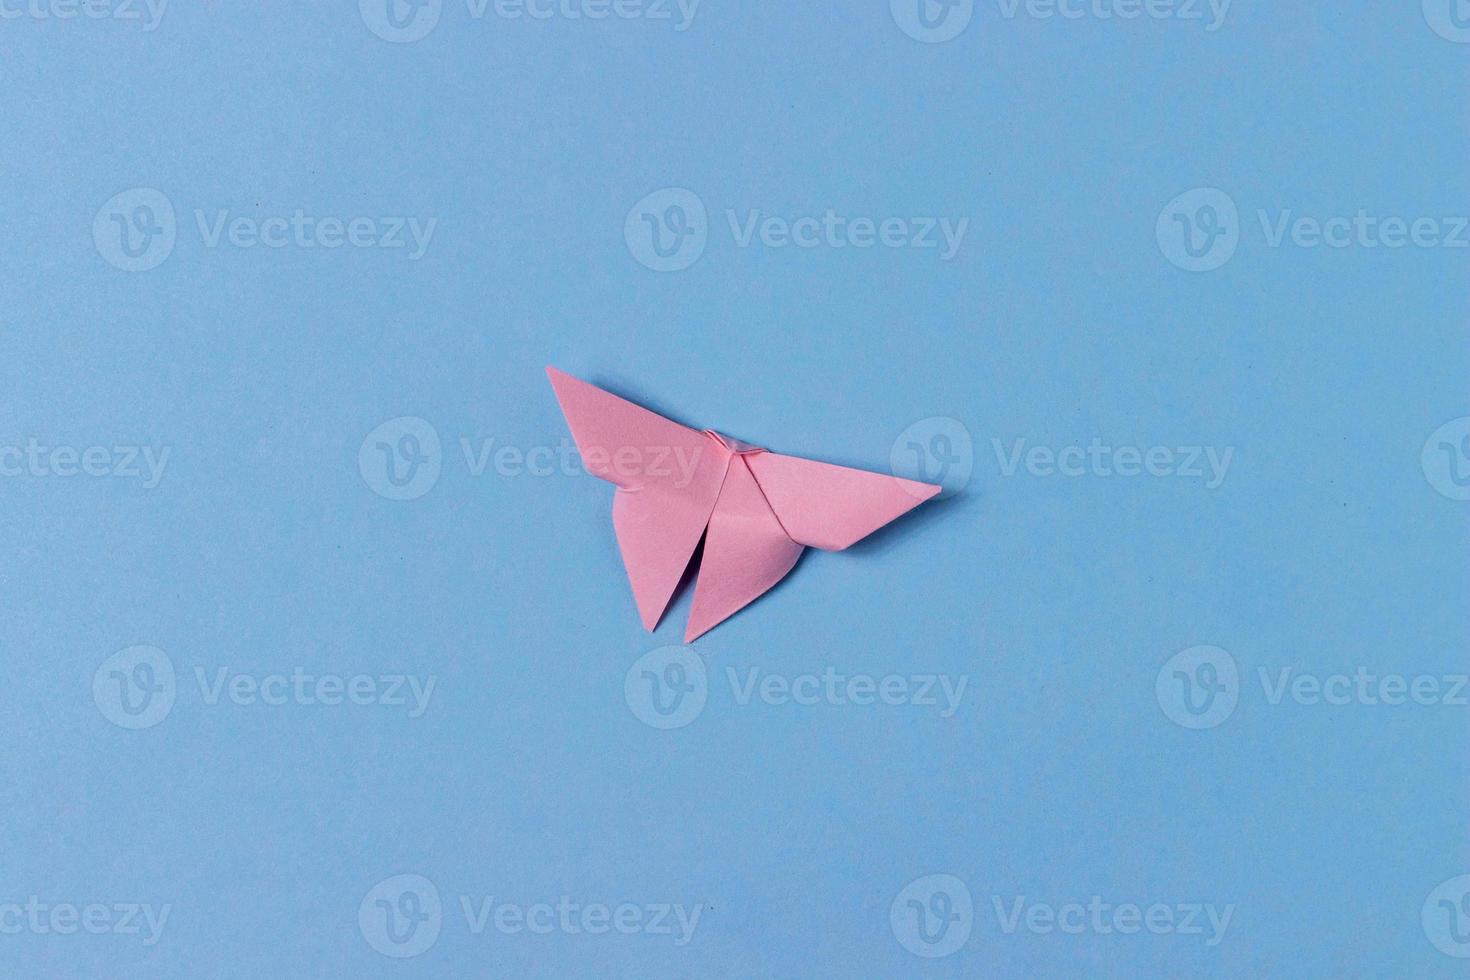 borboleta de origami rosa se dobra sem papel. no centro de um fundo azul. educação, passatempos, hobbies, atividades com crianças. fundo minimalista foto